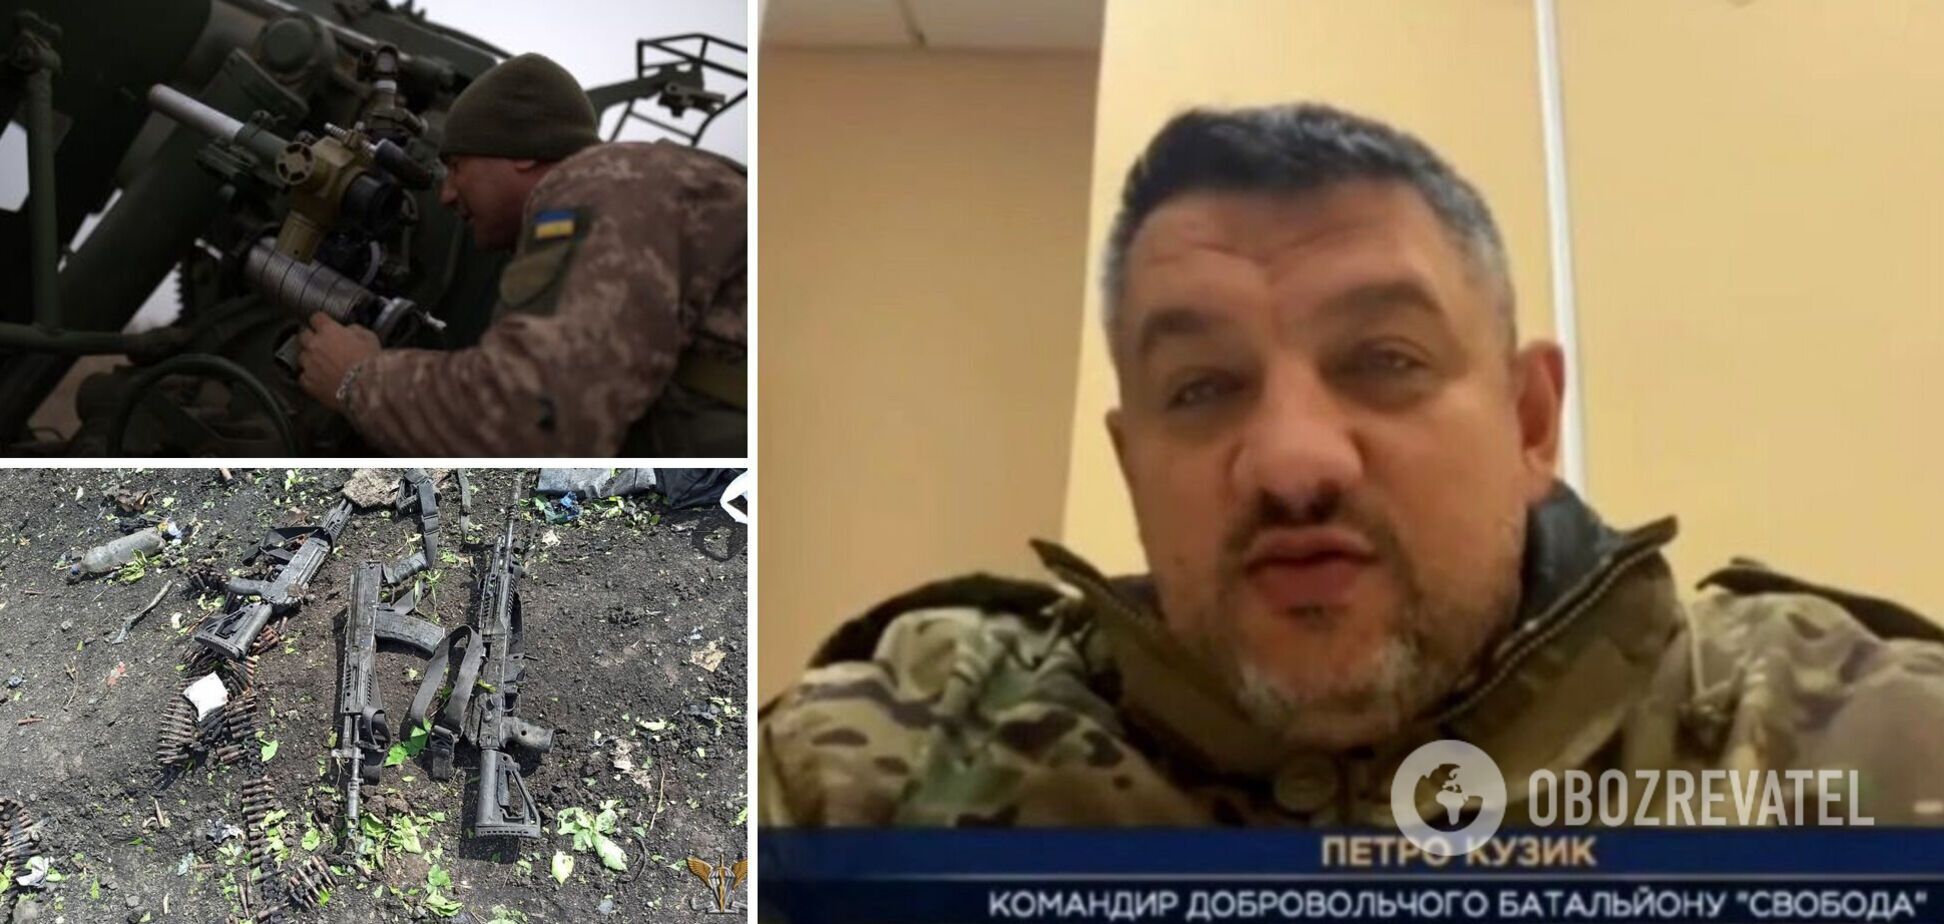 Враг понес большие потери в Луганской области – комбат батальона 'Свободы' Петр Кузик